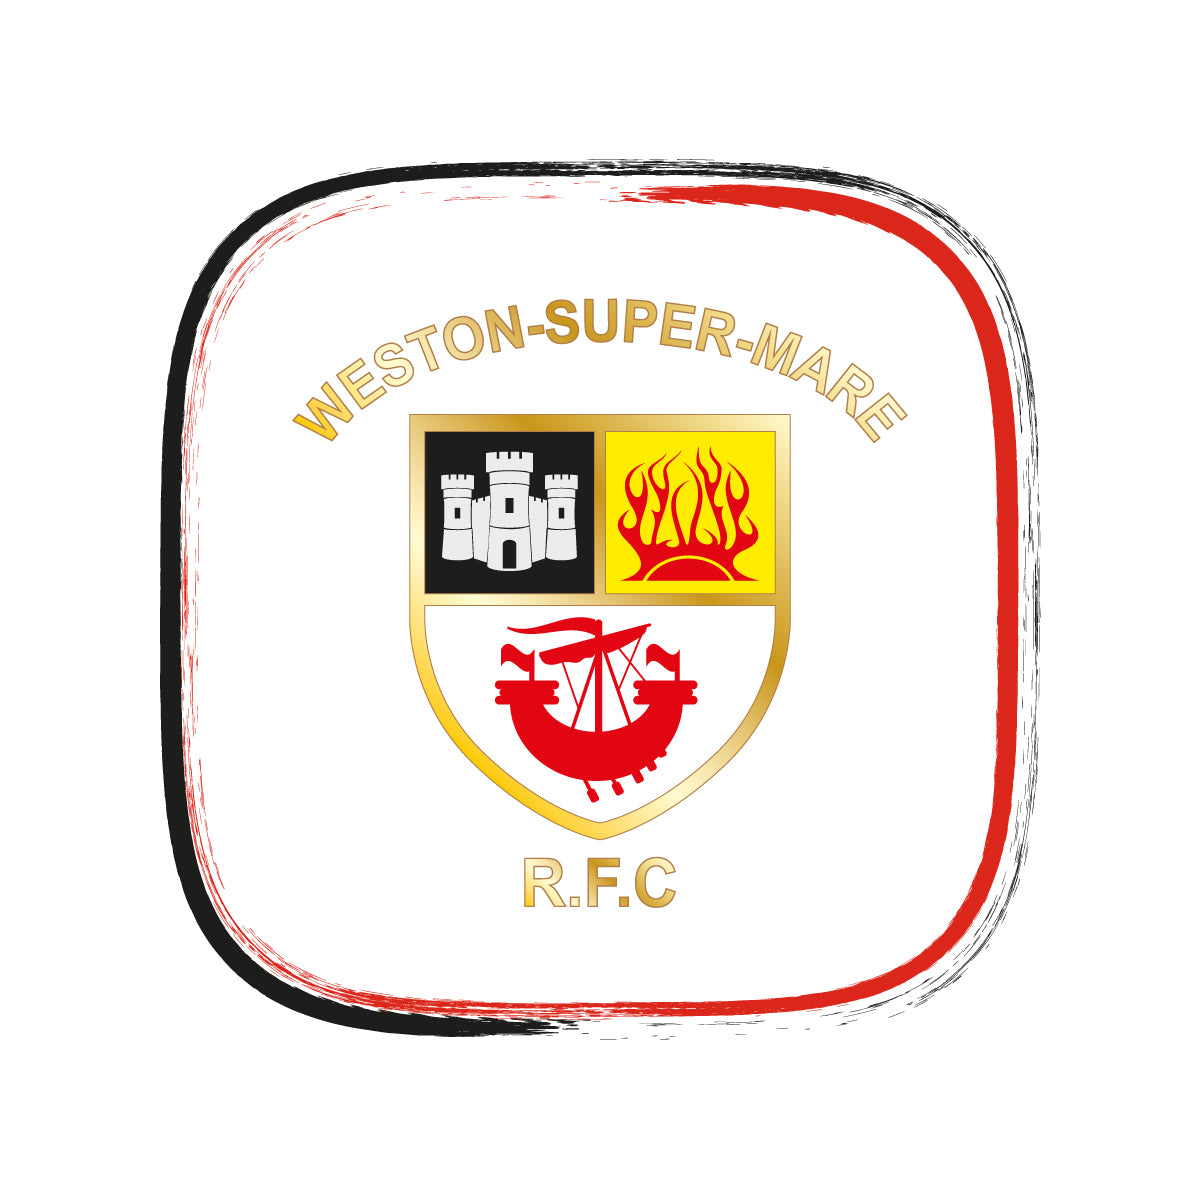 Weston-super-Mare RFC